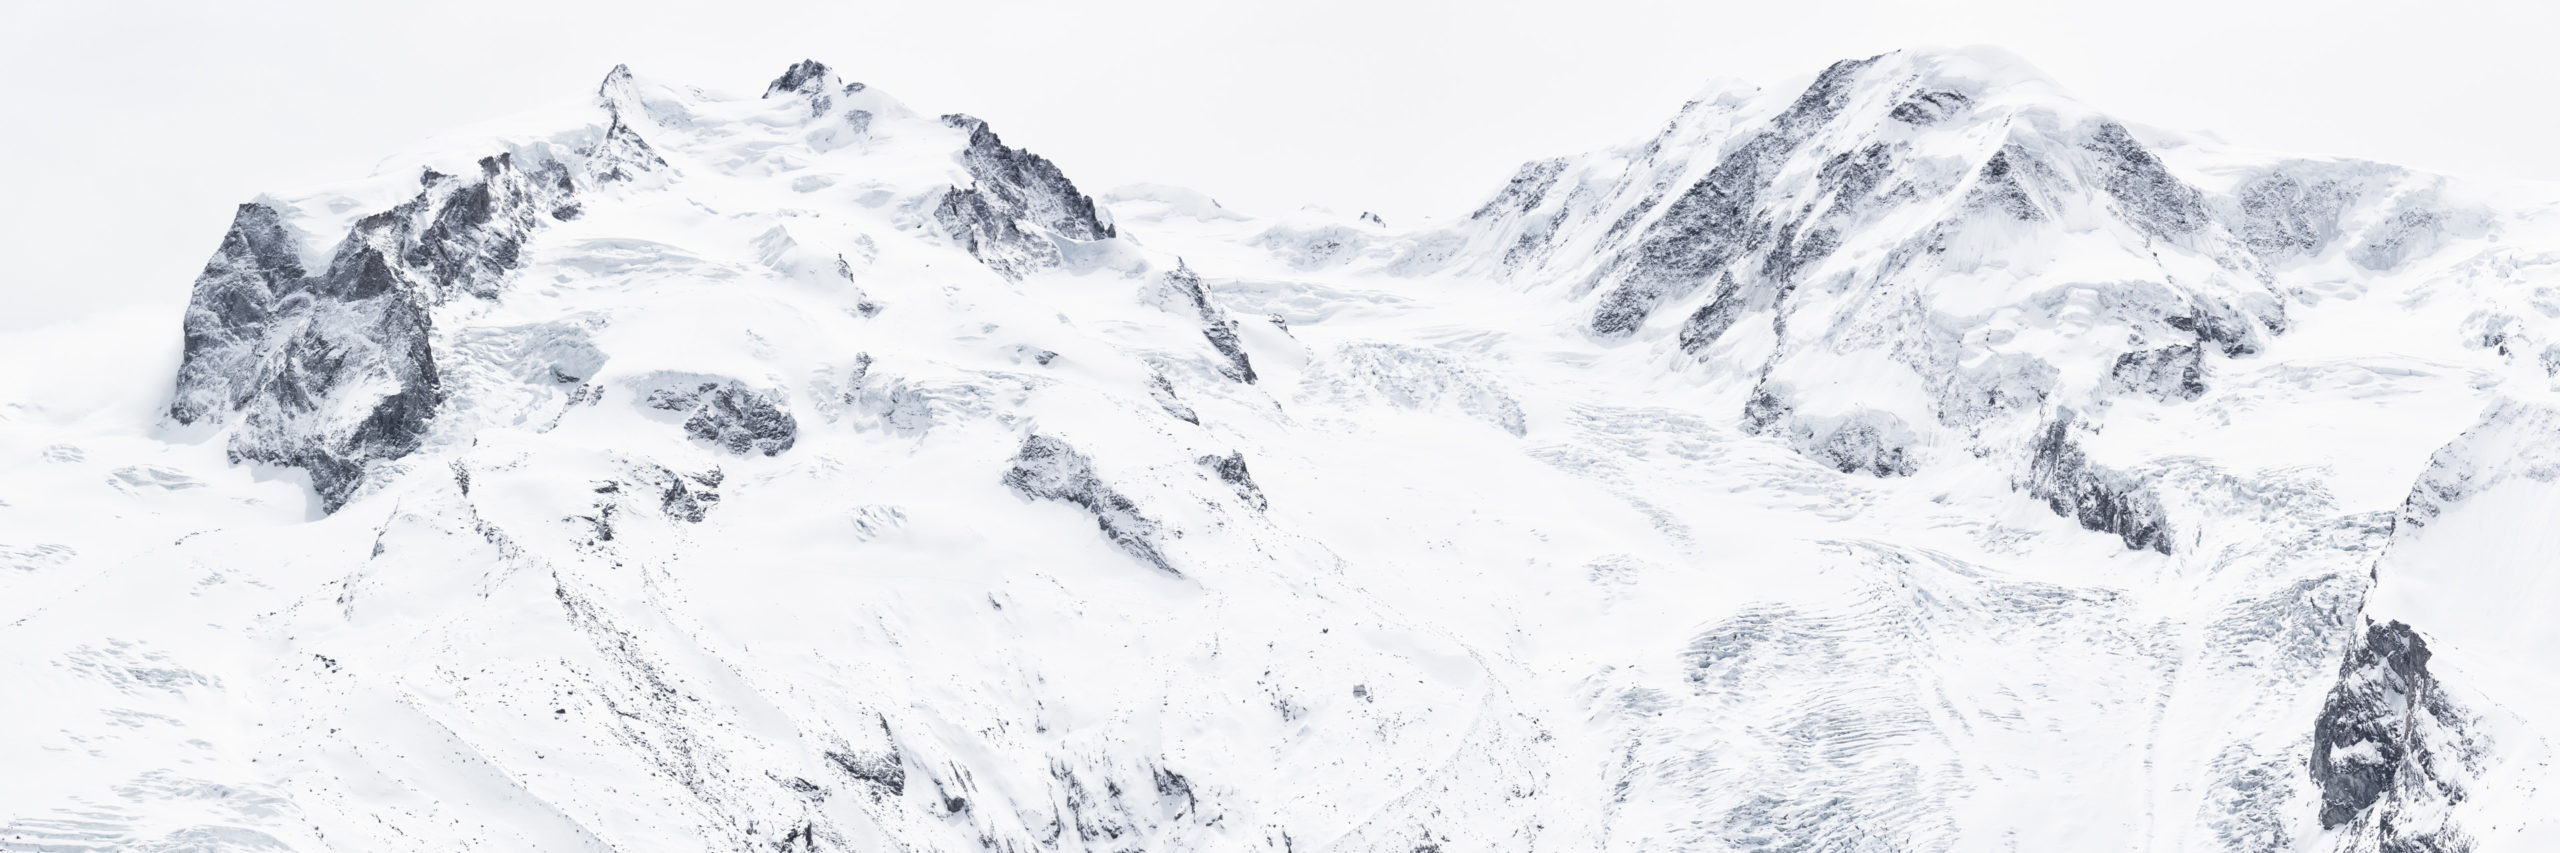 Mont Rose - Image paysage de montagne du massif montagneux en neige  du Monte Rosa en noir et blanc - Lyskamm